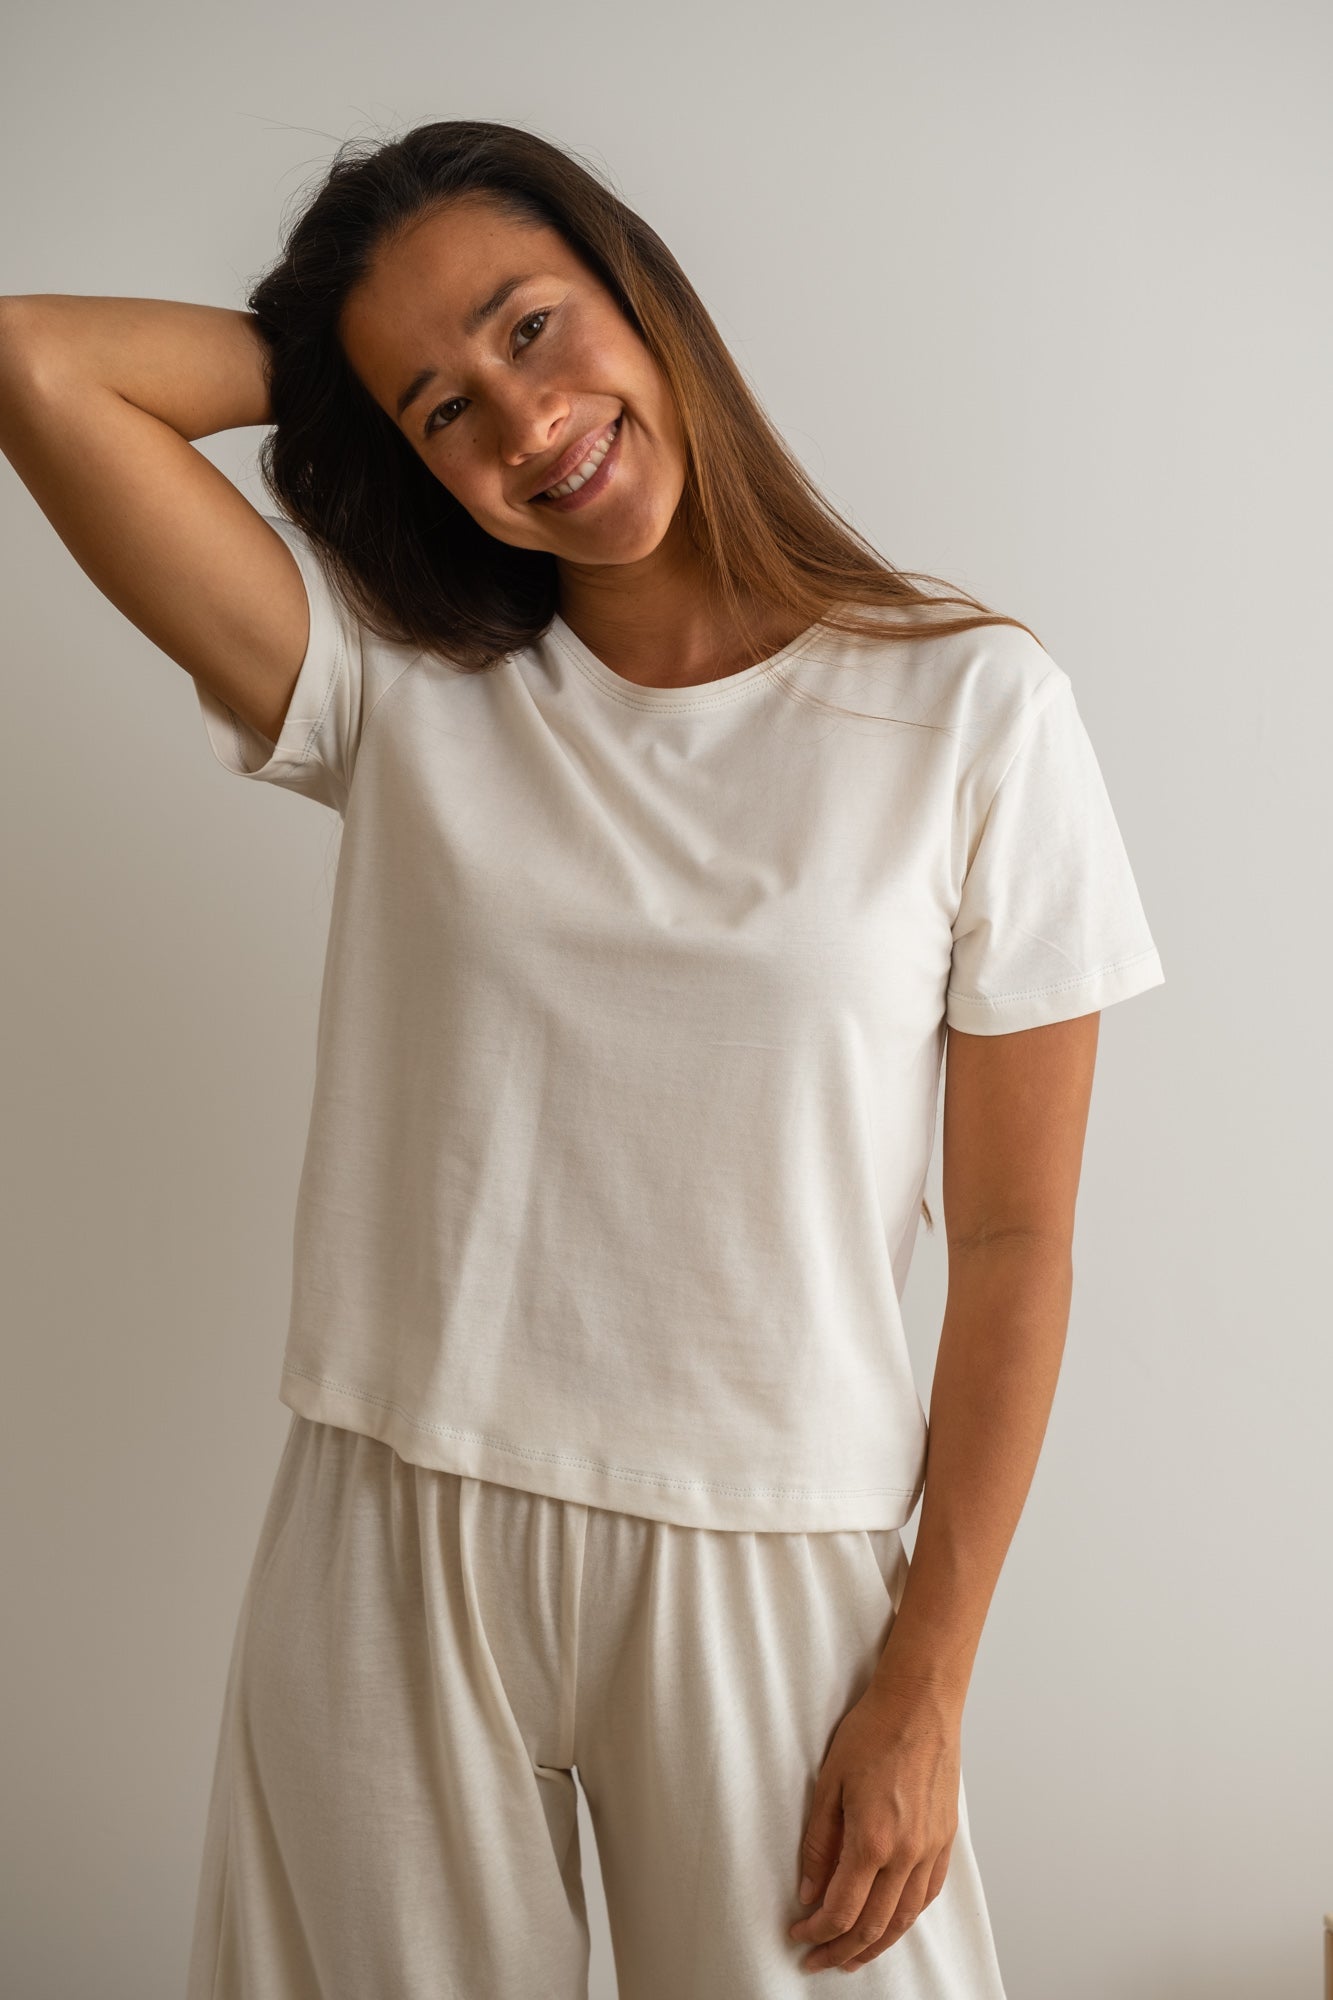 MIA Moda Regenerativa Camisetas S Camiseta Esencial mujer - natural